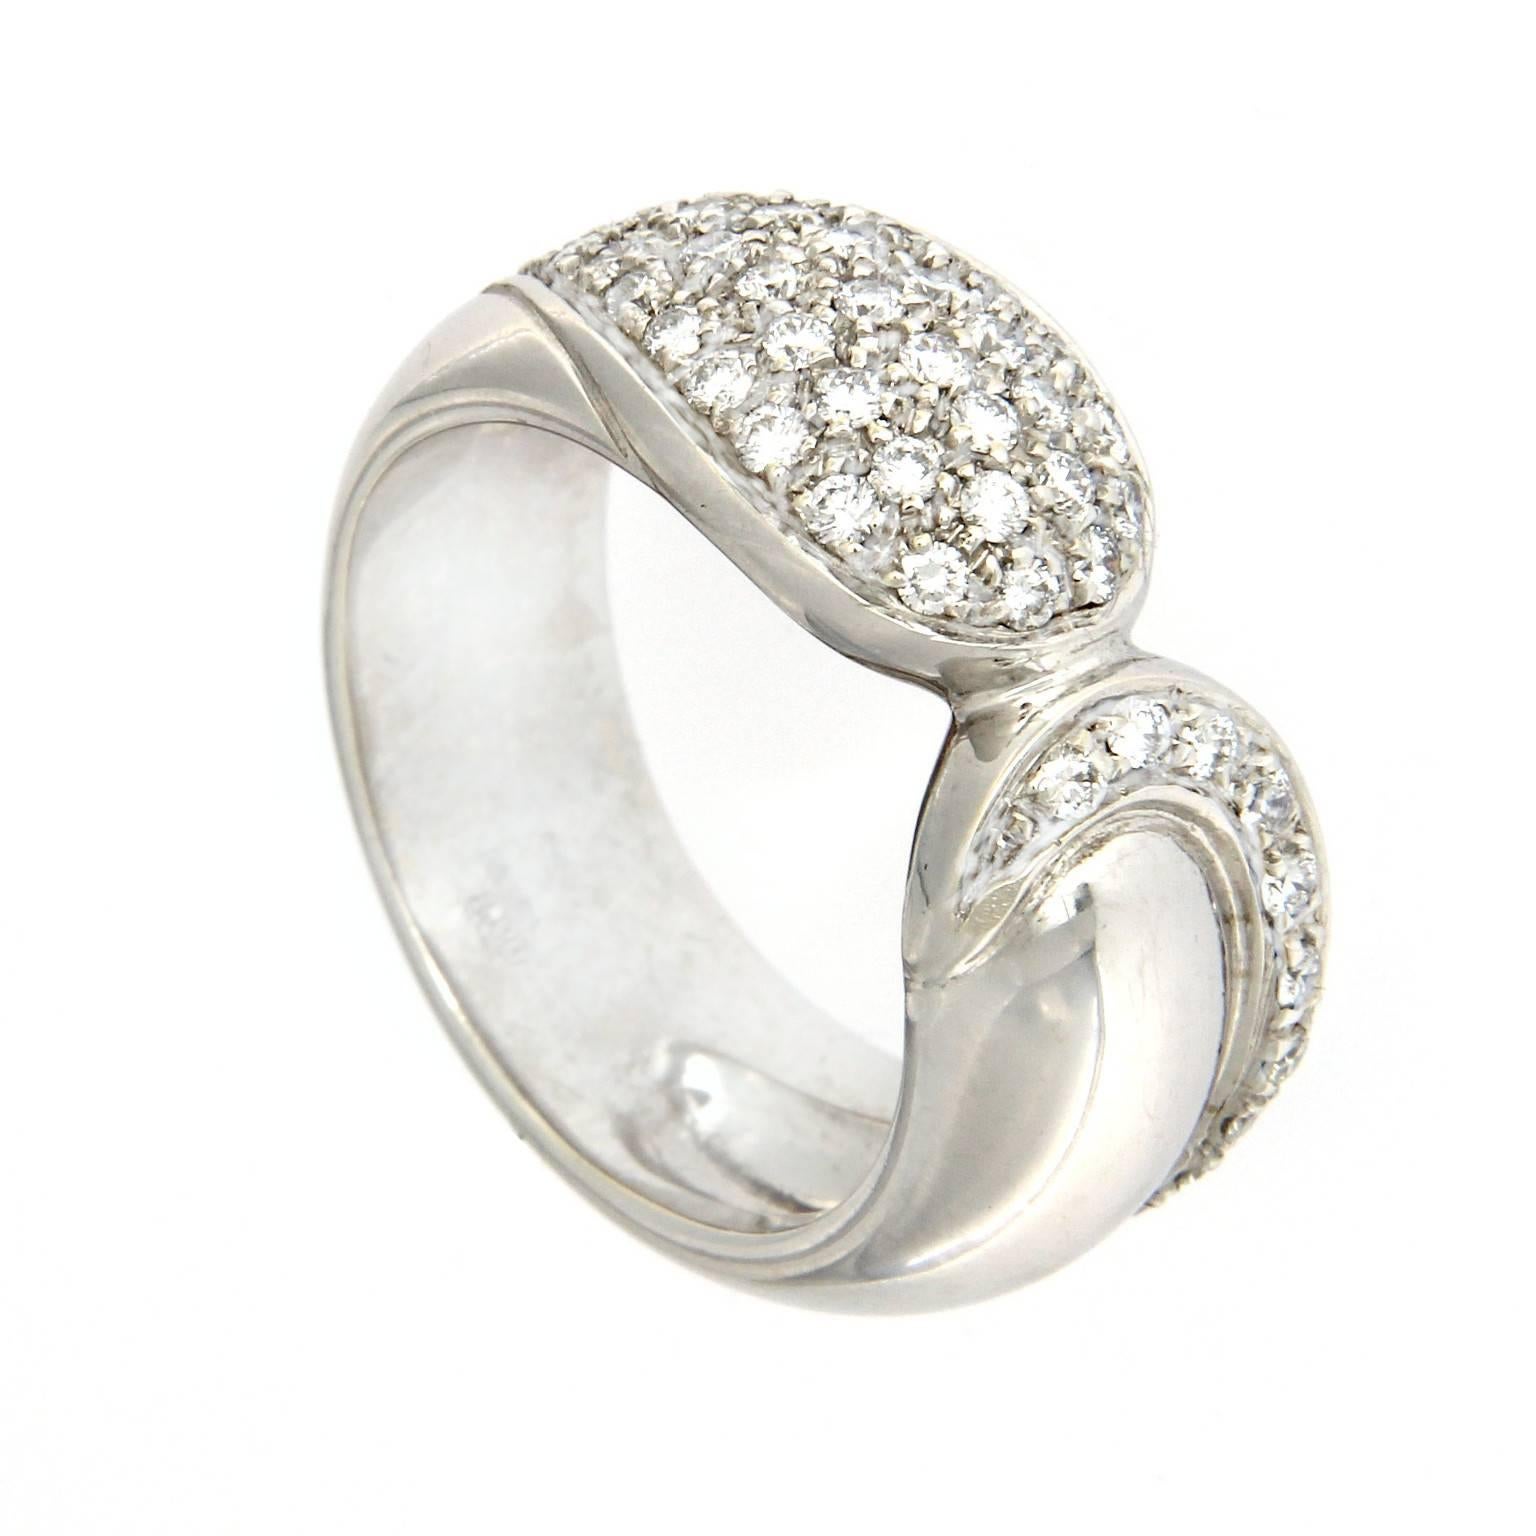 White Gold 18 Karat and Diamond Ring